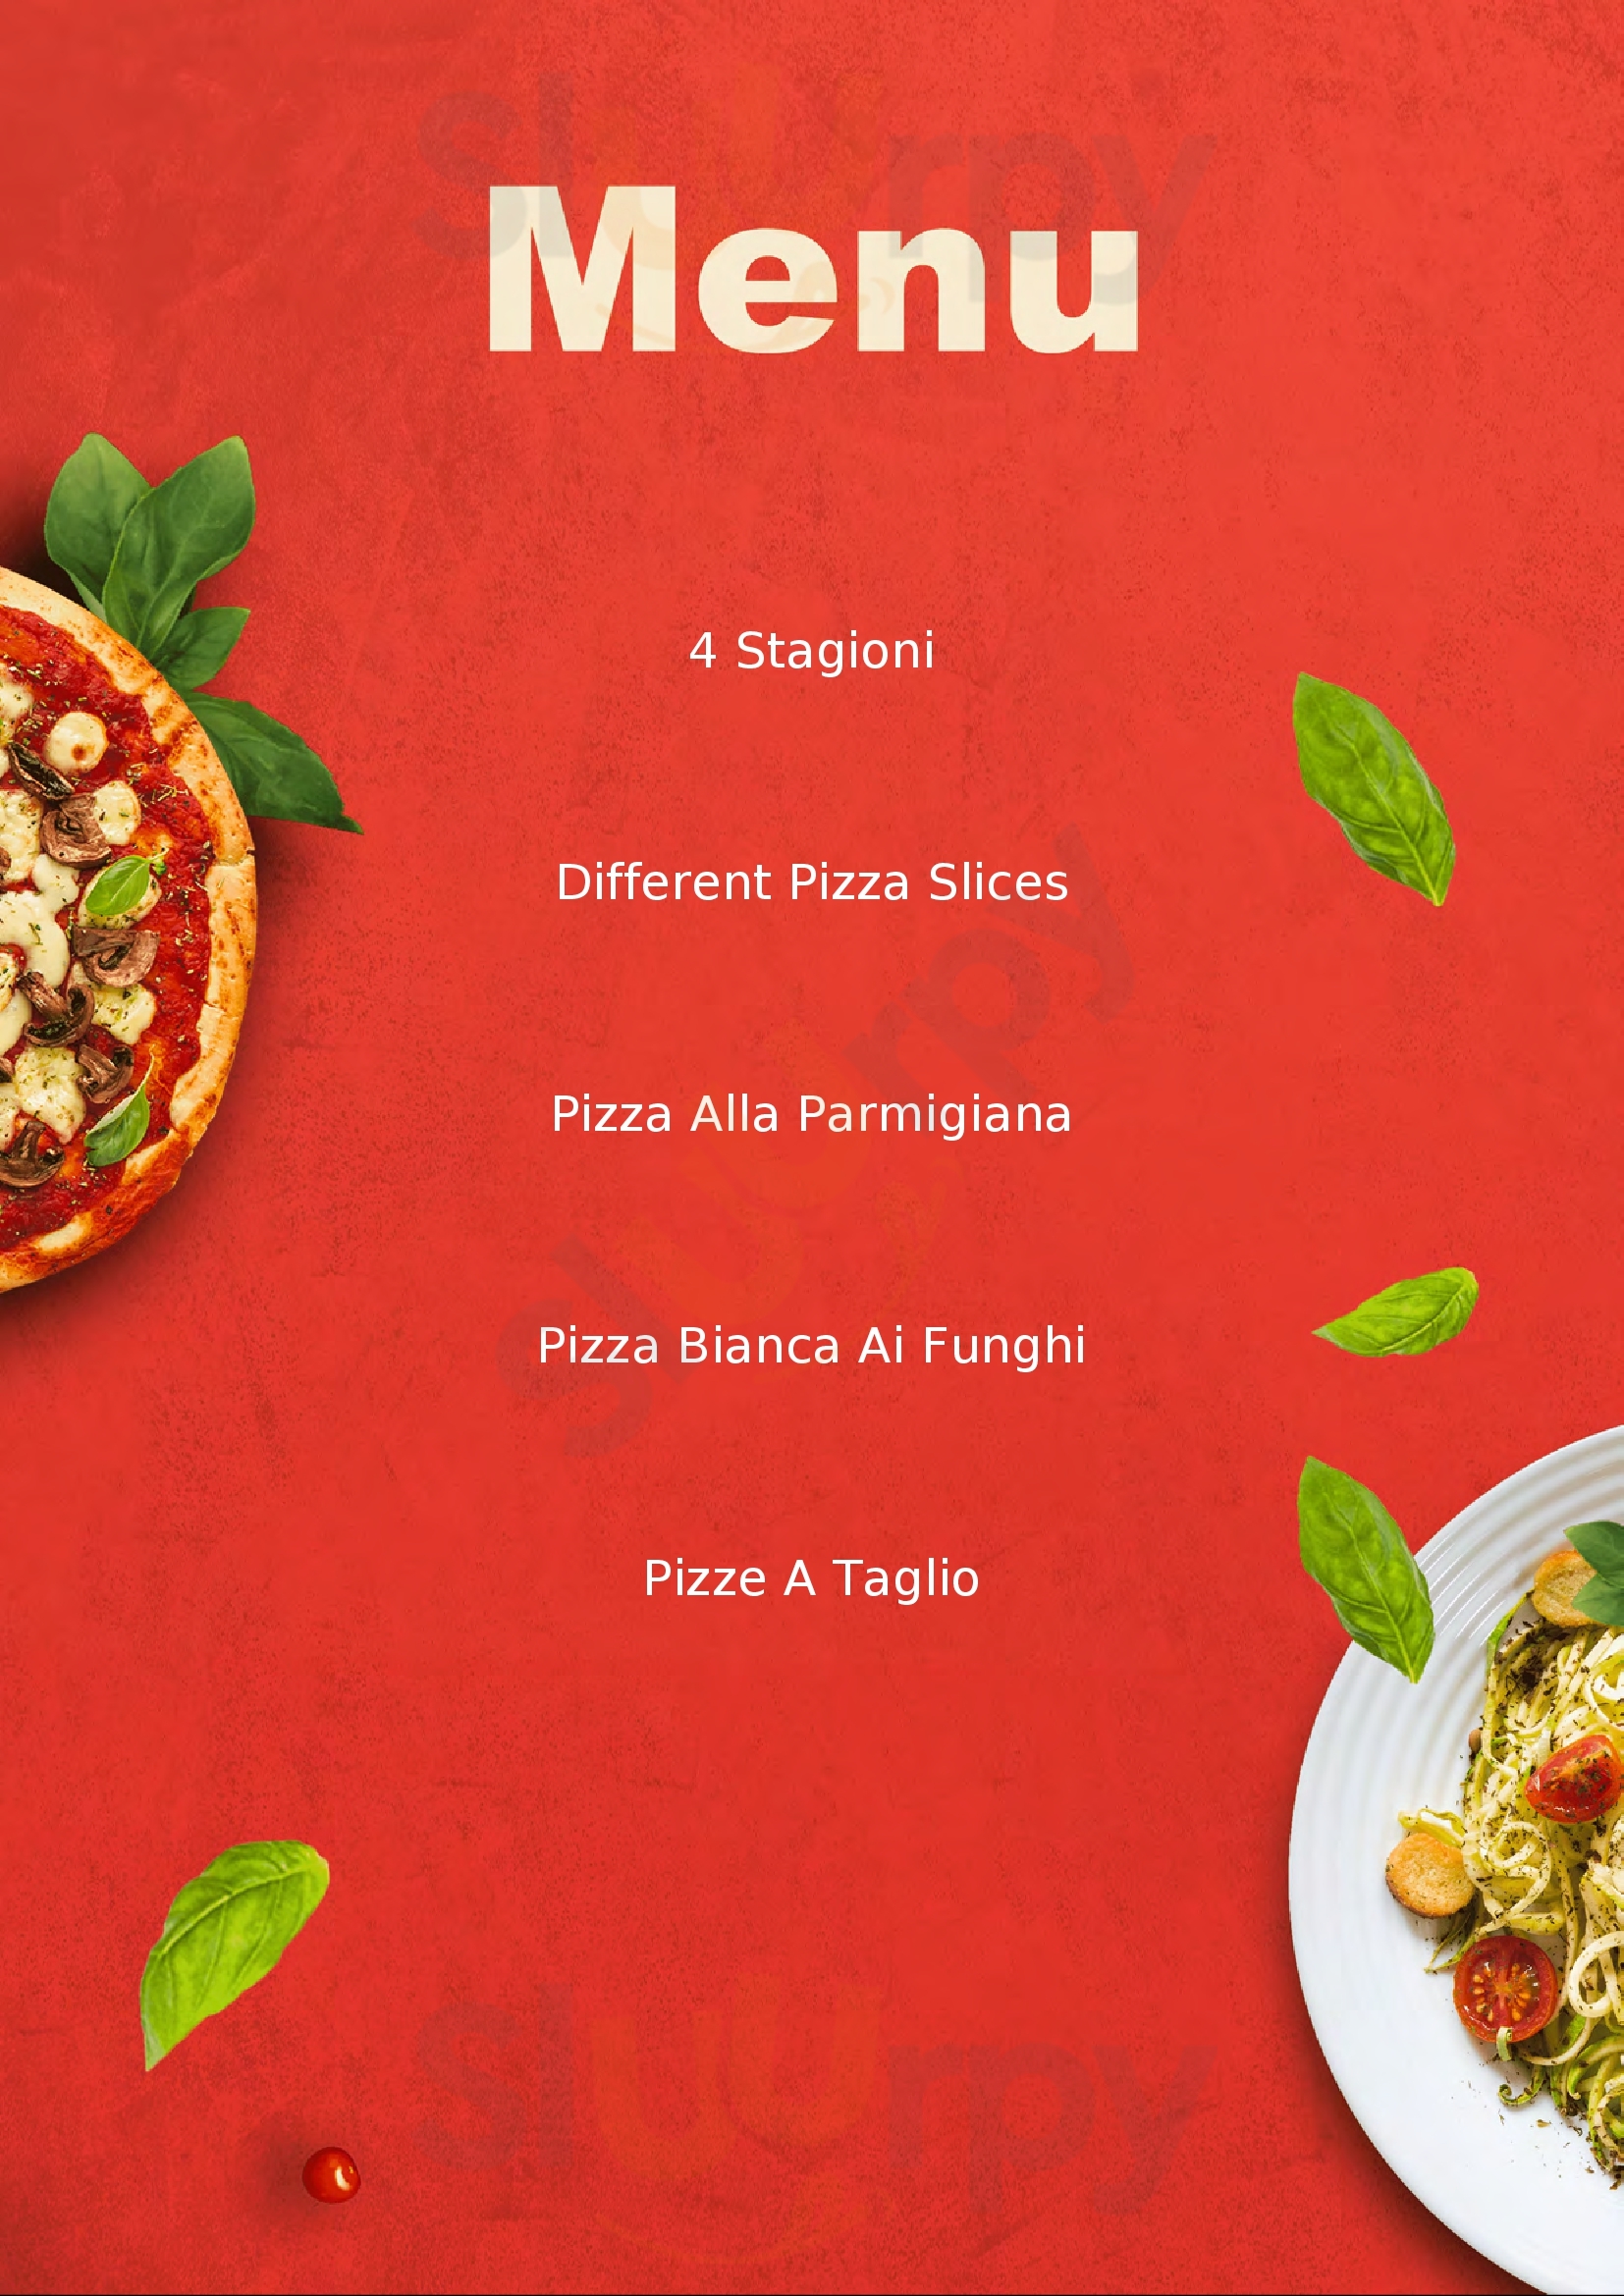 Pizzeria Rustica Mondragone Mondragone menù 1 pagina